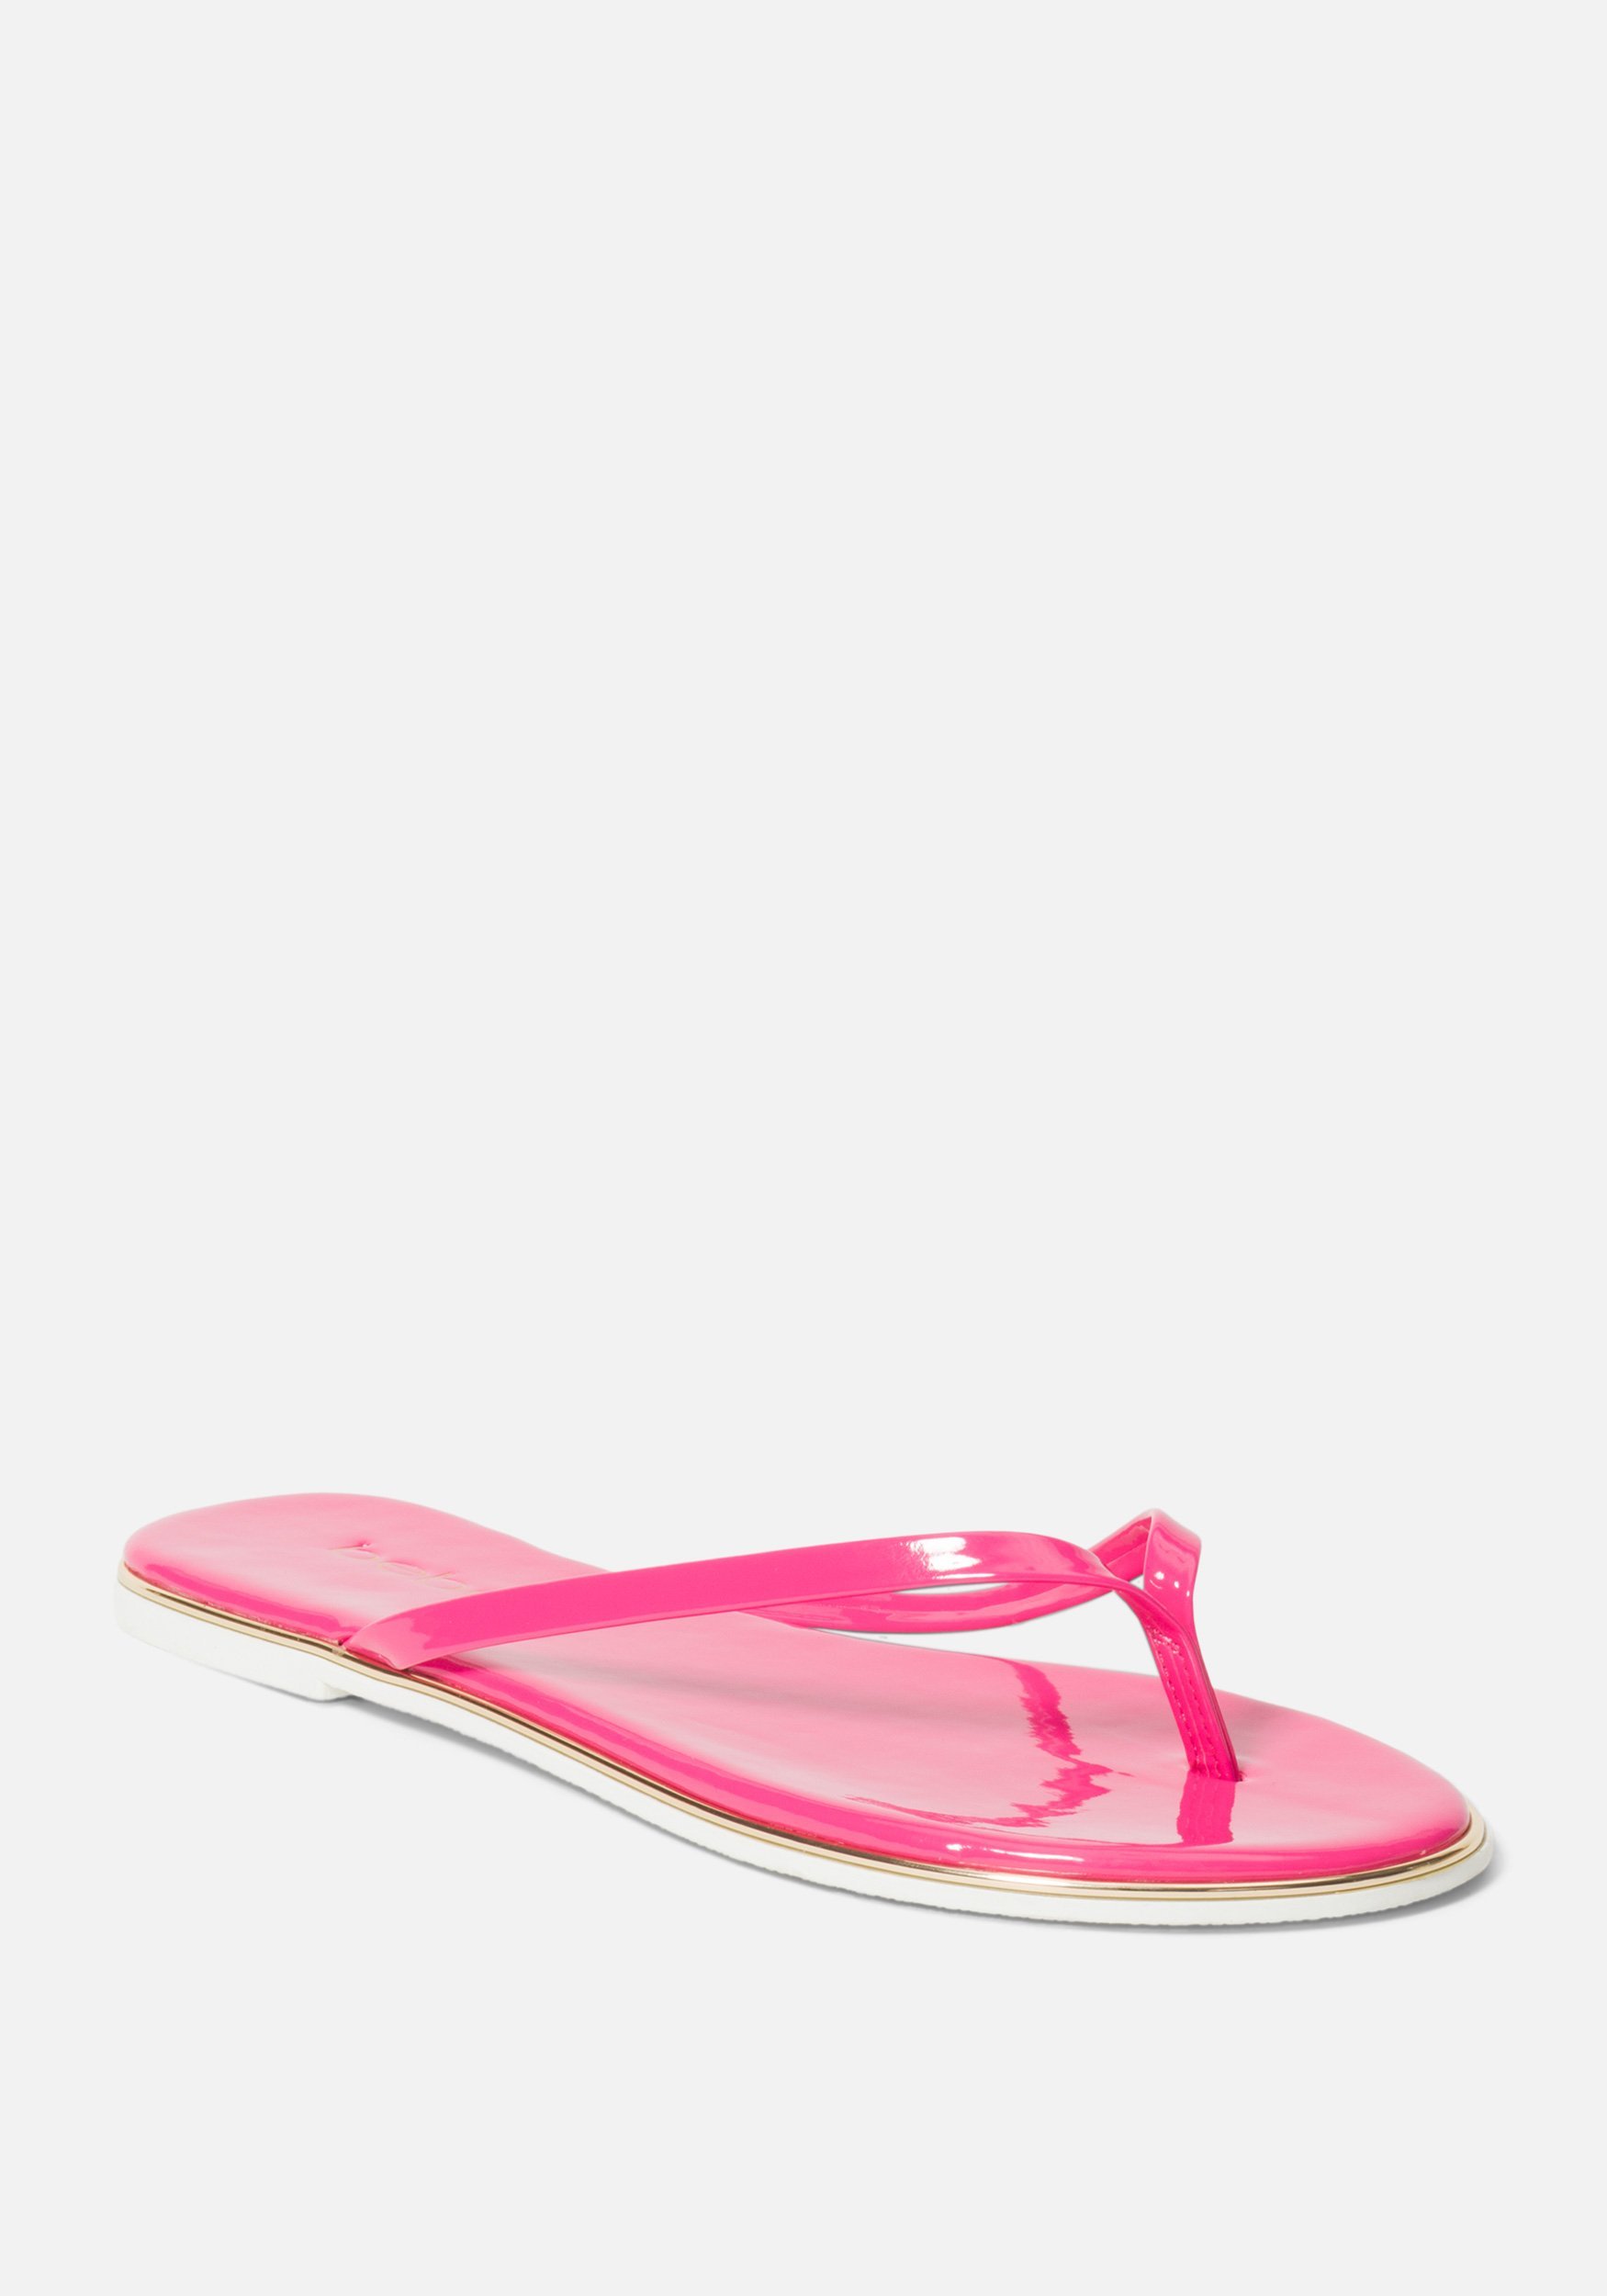 Bebe Women's Ilistra W Flip Flops, Size 7 in FUSCHIA Synthetic